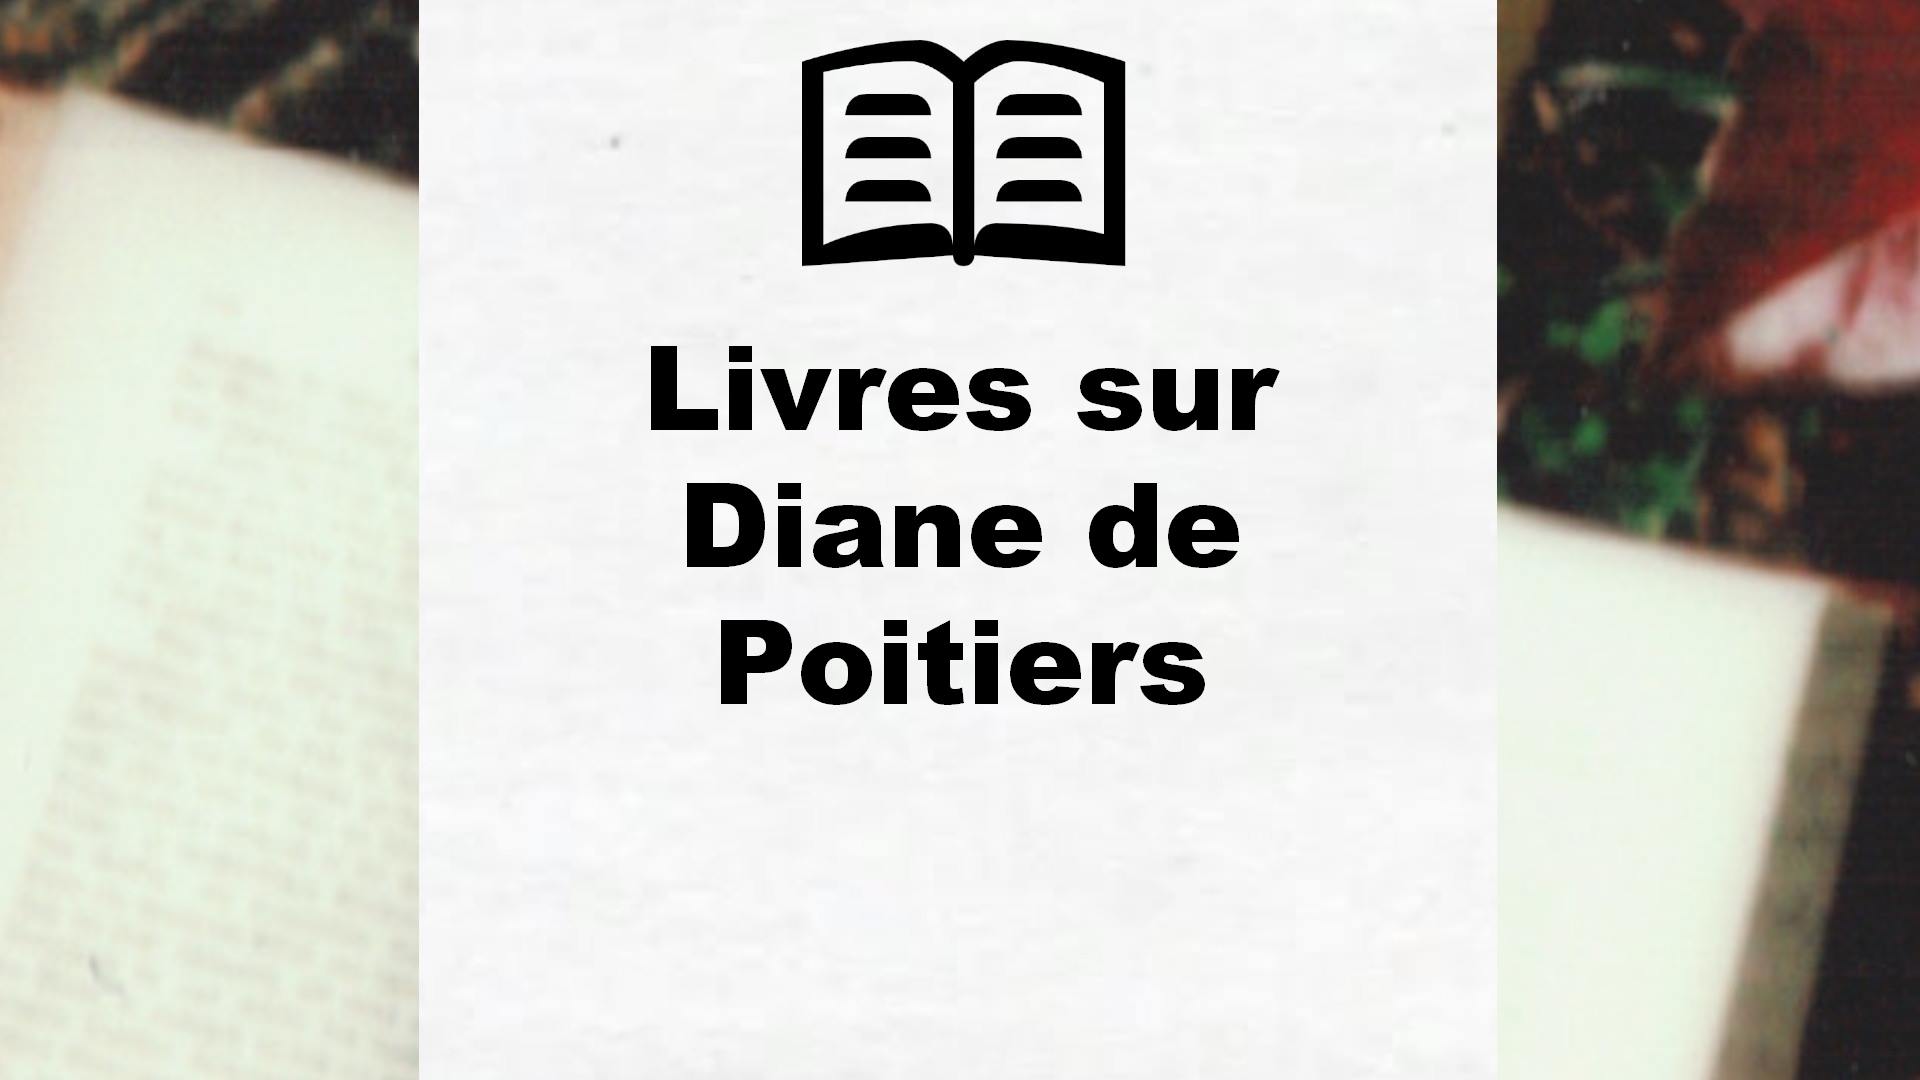 Livres sur Diane de Poitiers